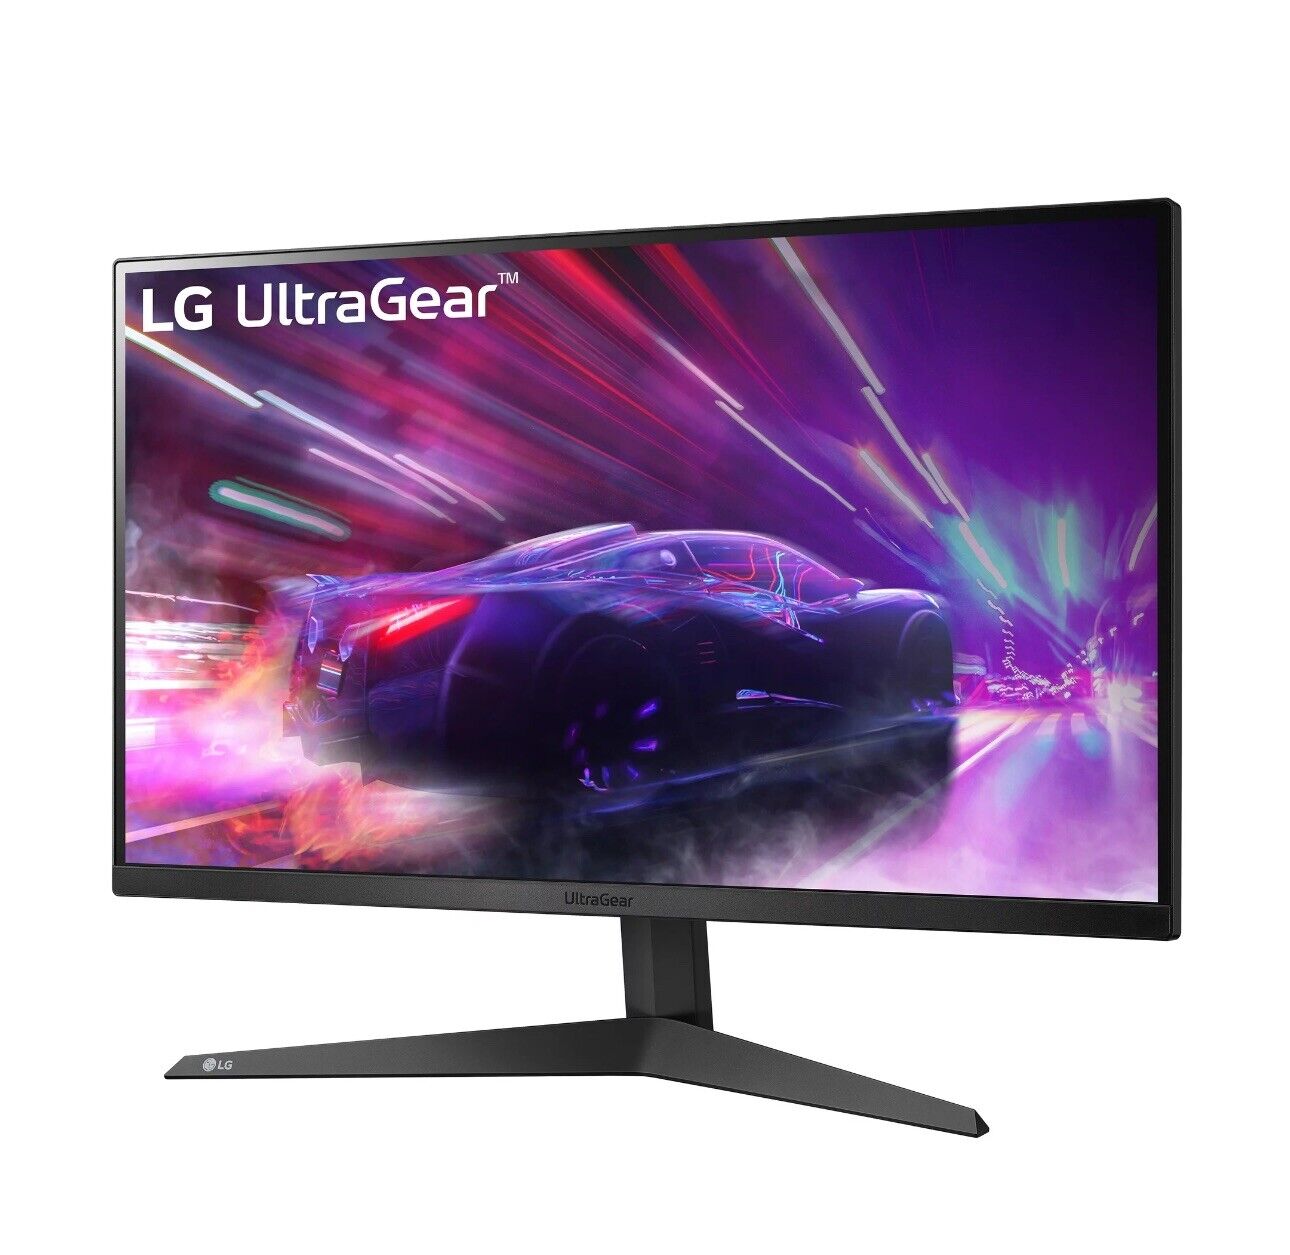 New LG UltraGear 27 inch 165hz Widescreen FHD Monitor